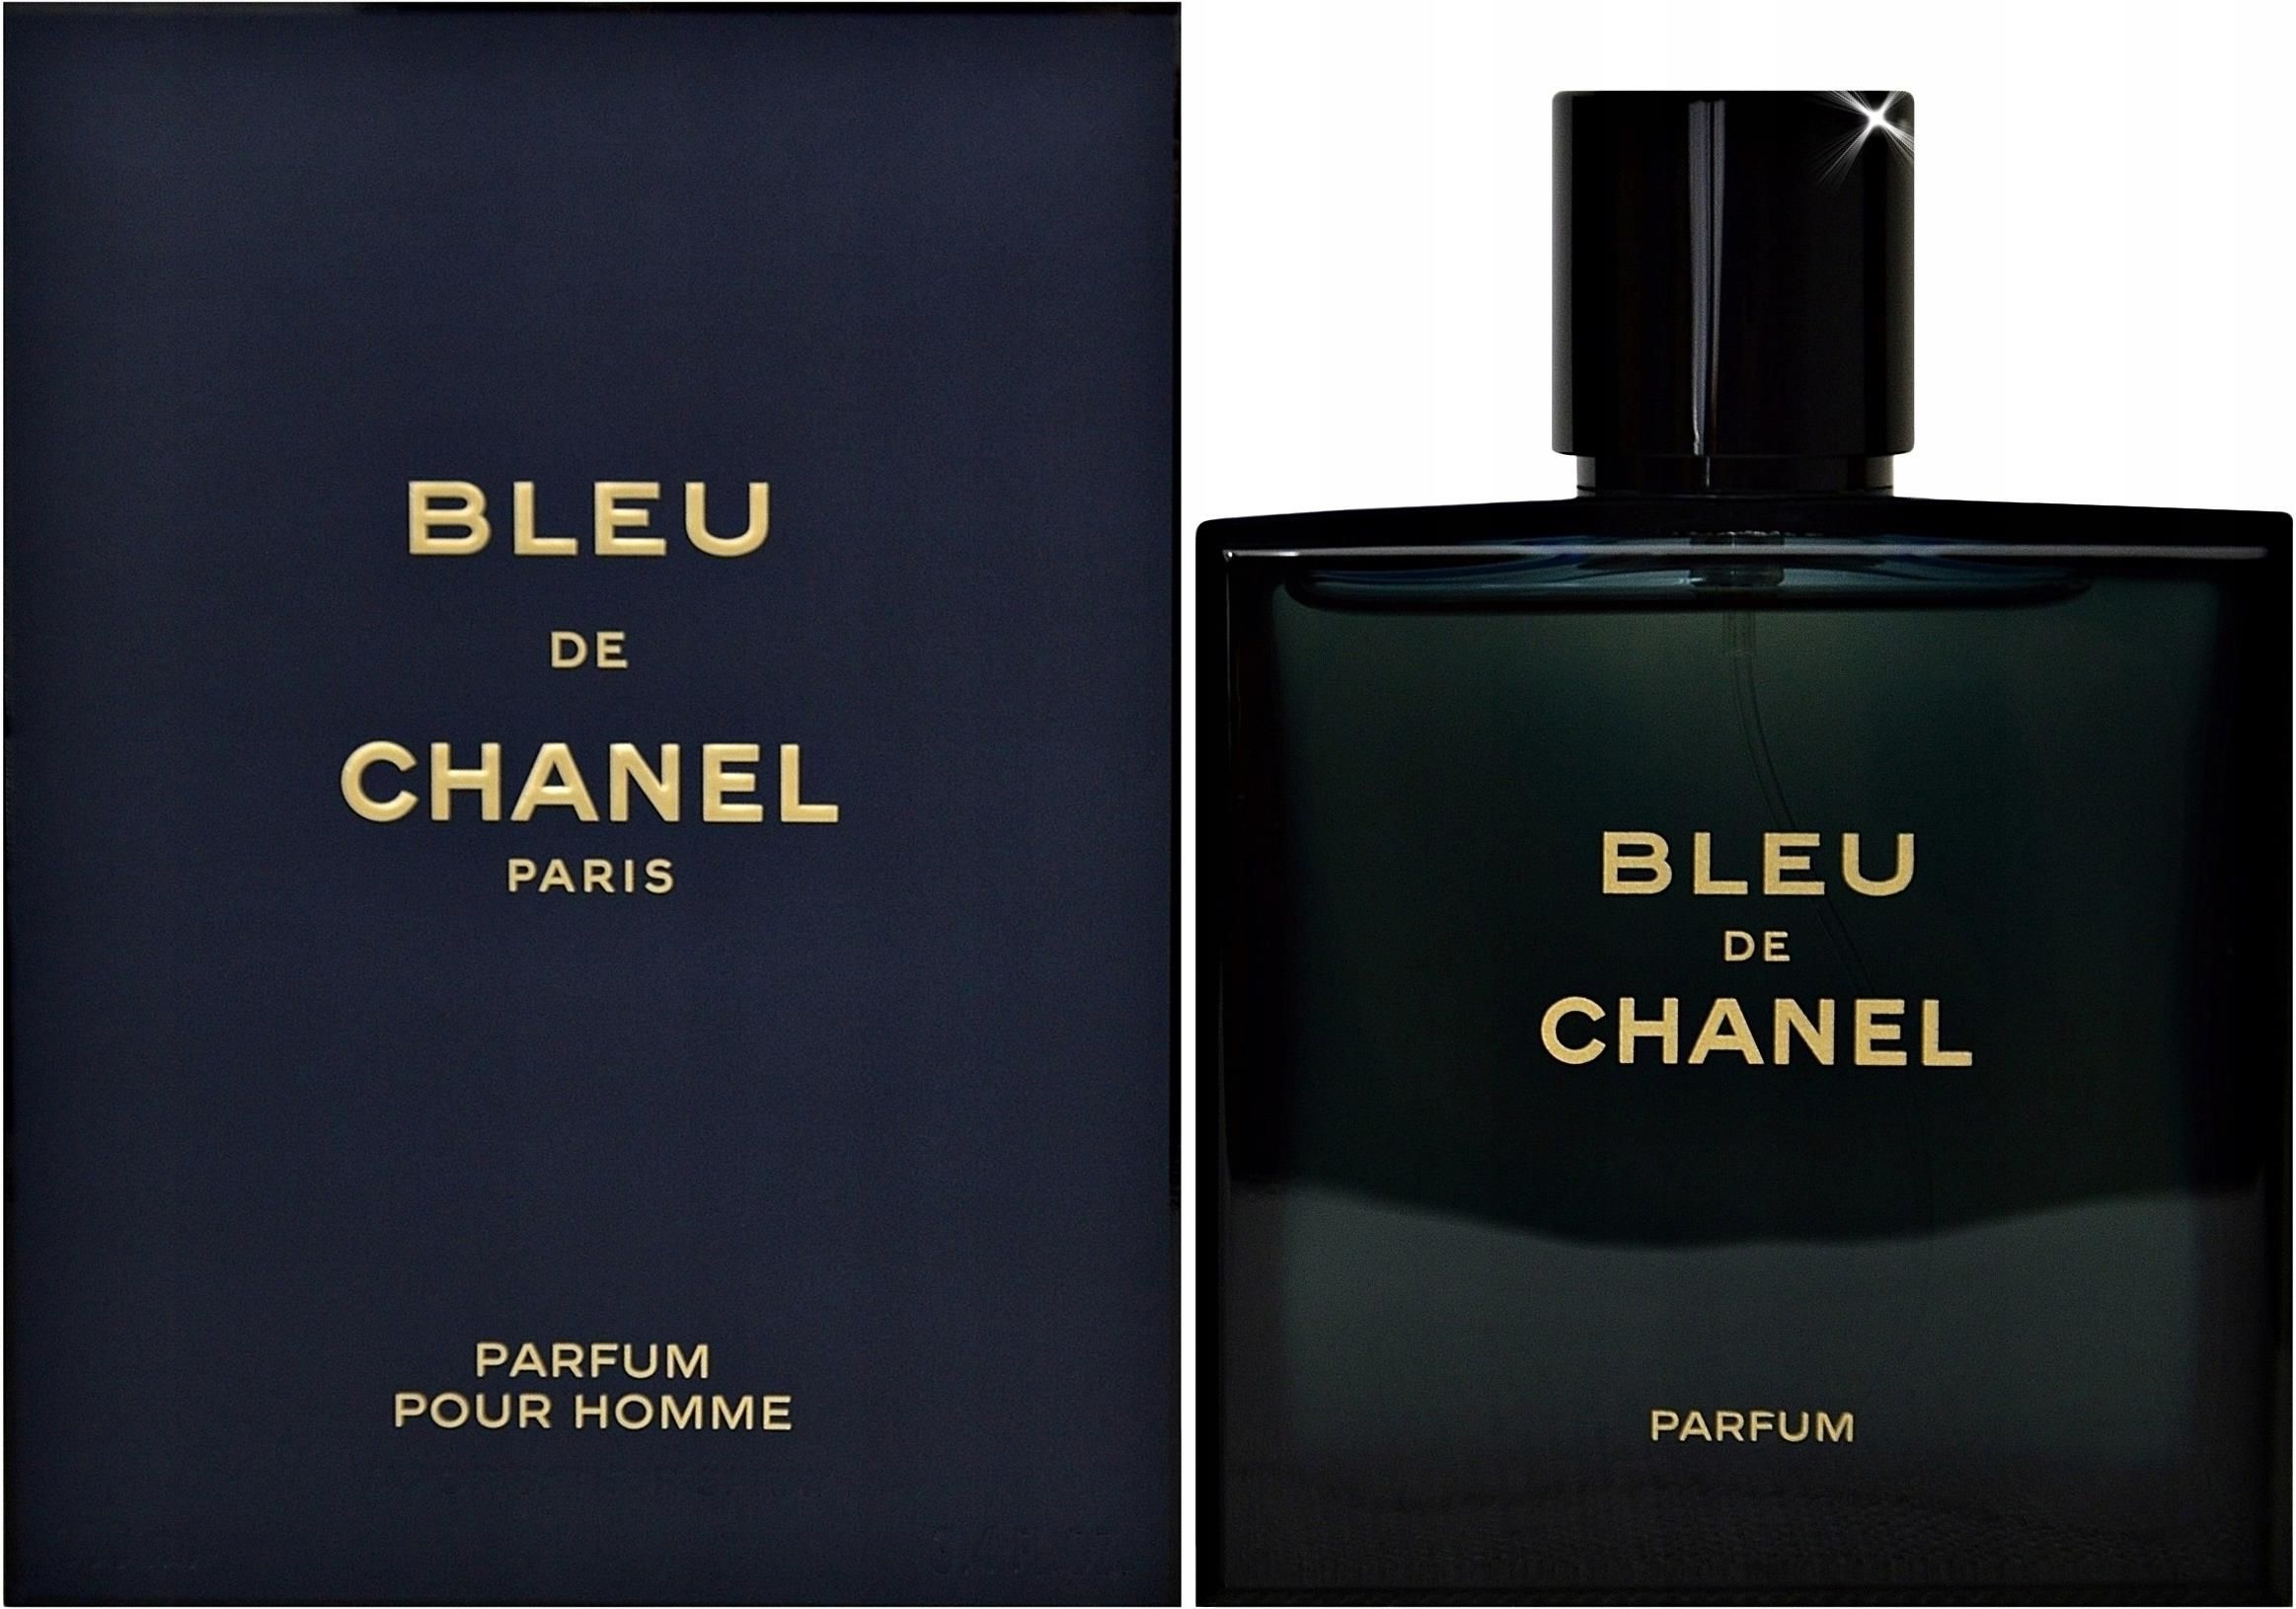 Chanel Bleu De Chanel Perfumy 150 ml